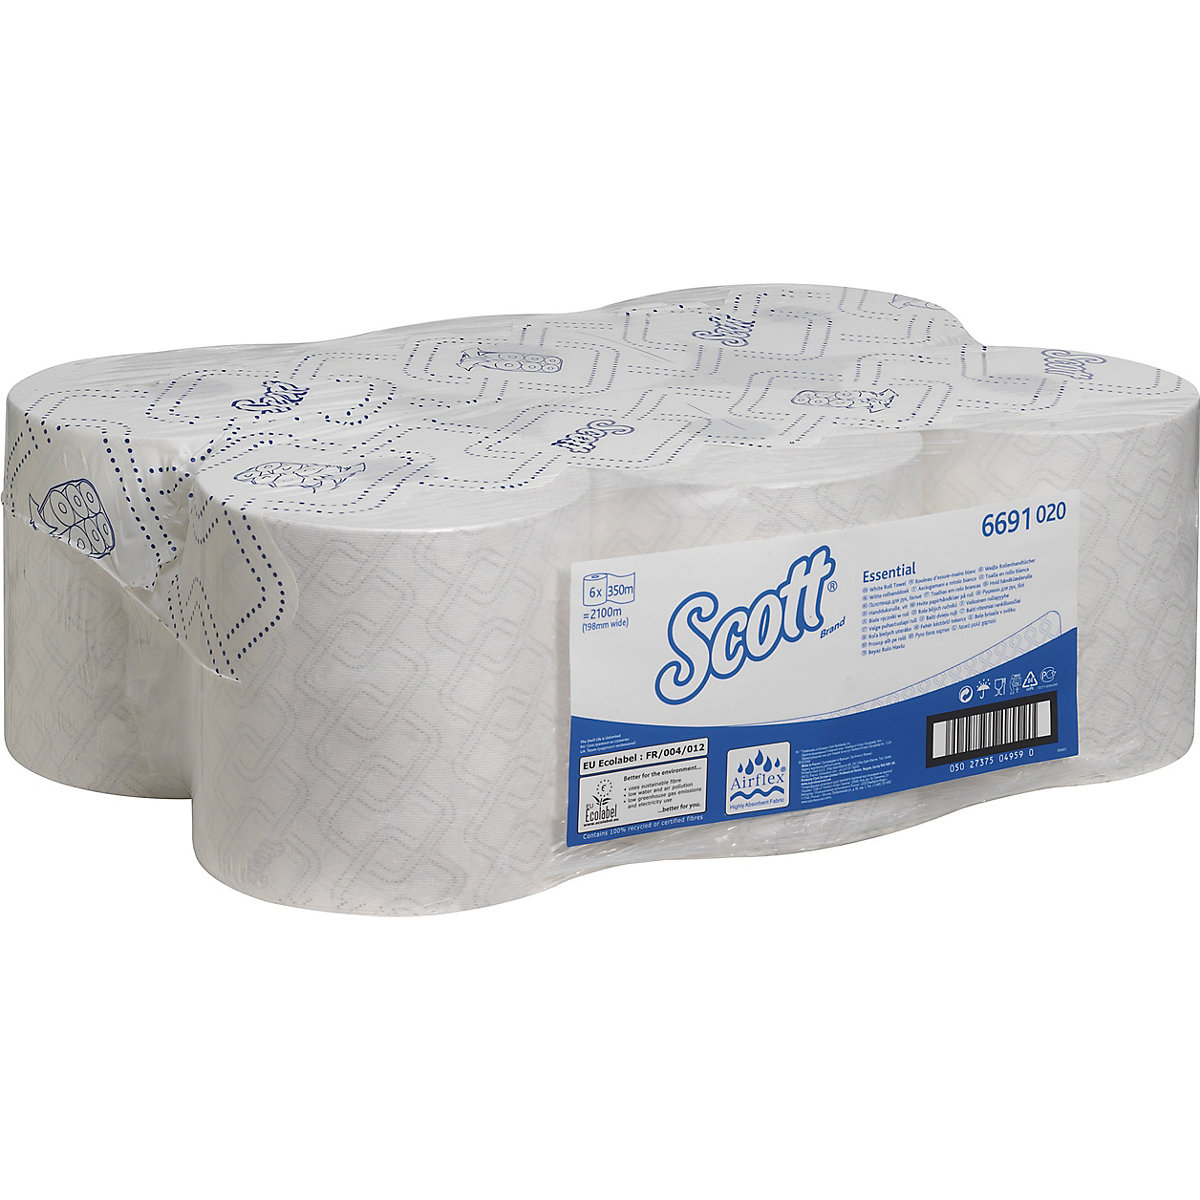 Scott® ESSENTIAL™ Papierhandtücher Kimberly-Clark